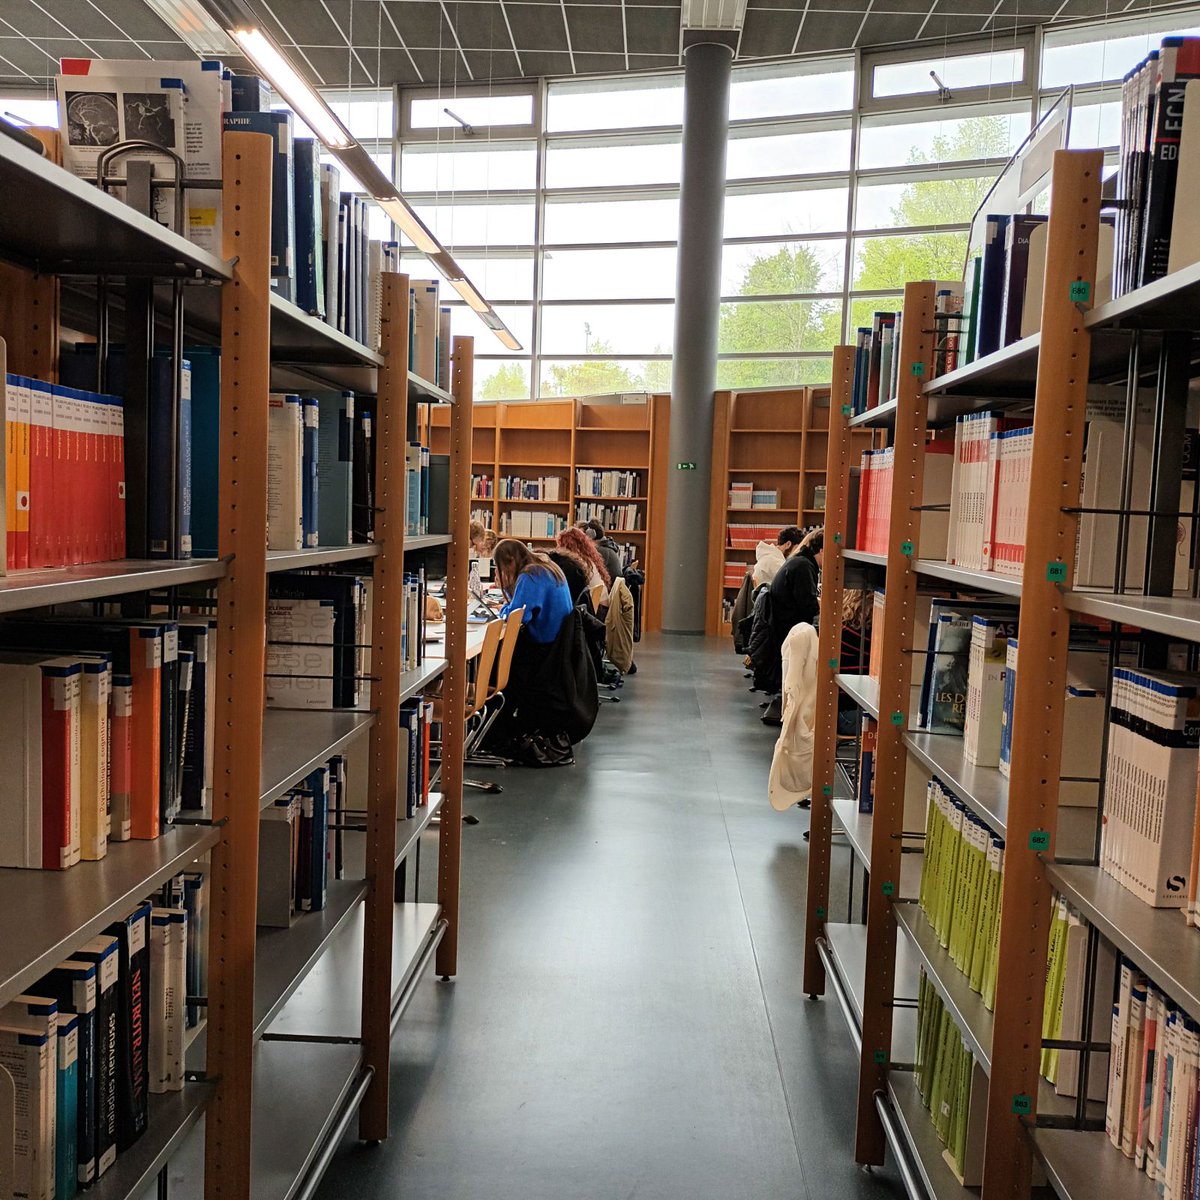 Pendant les congés, les bibliothèques @universitereims vous accueillent ! Cette semaine : ➡️ #busantereims et #burobertdesorbon lun-ven 8h-20h ➡️ #bumoulindelahousse lun-ven 8h-19h ➡️ #bucomtesdechampagne (Troyes) lun-ven 9h-17h ➕ samedi, #burobertdesorbon 9h-19h